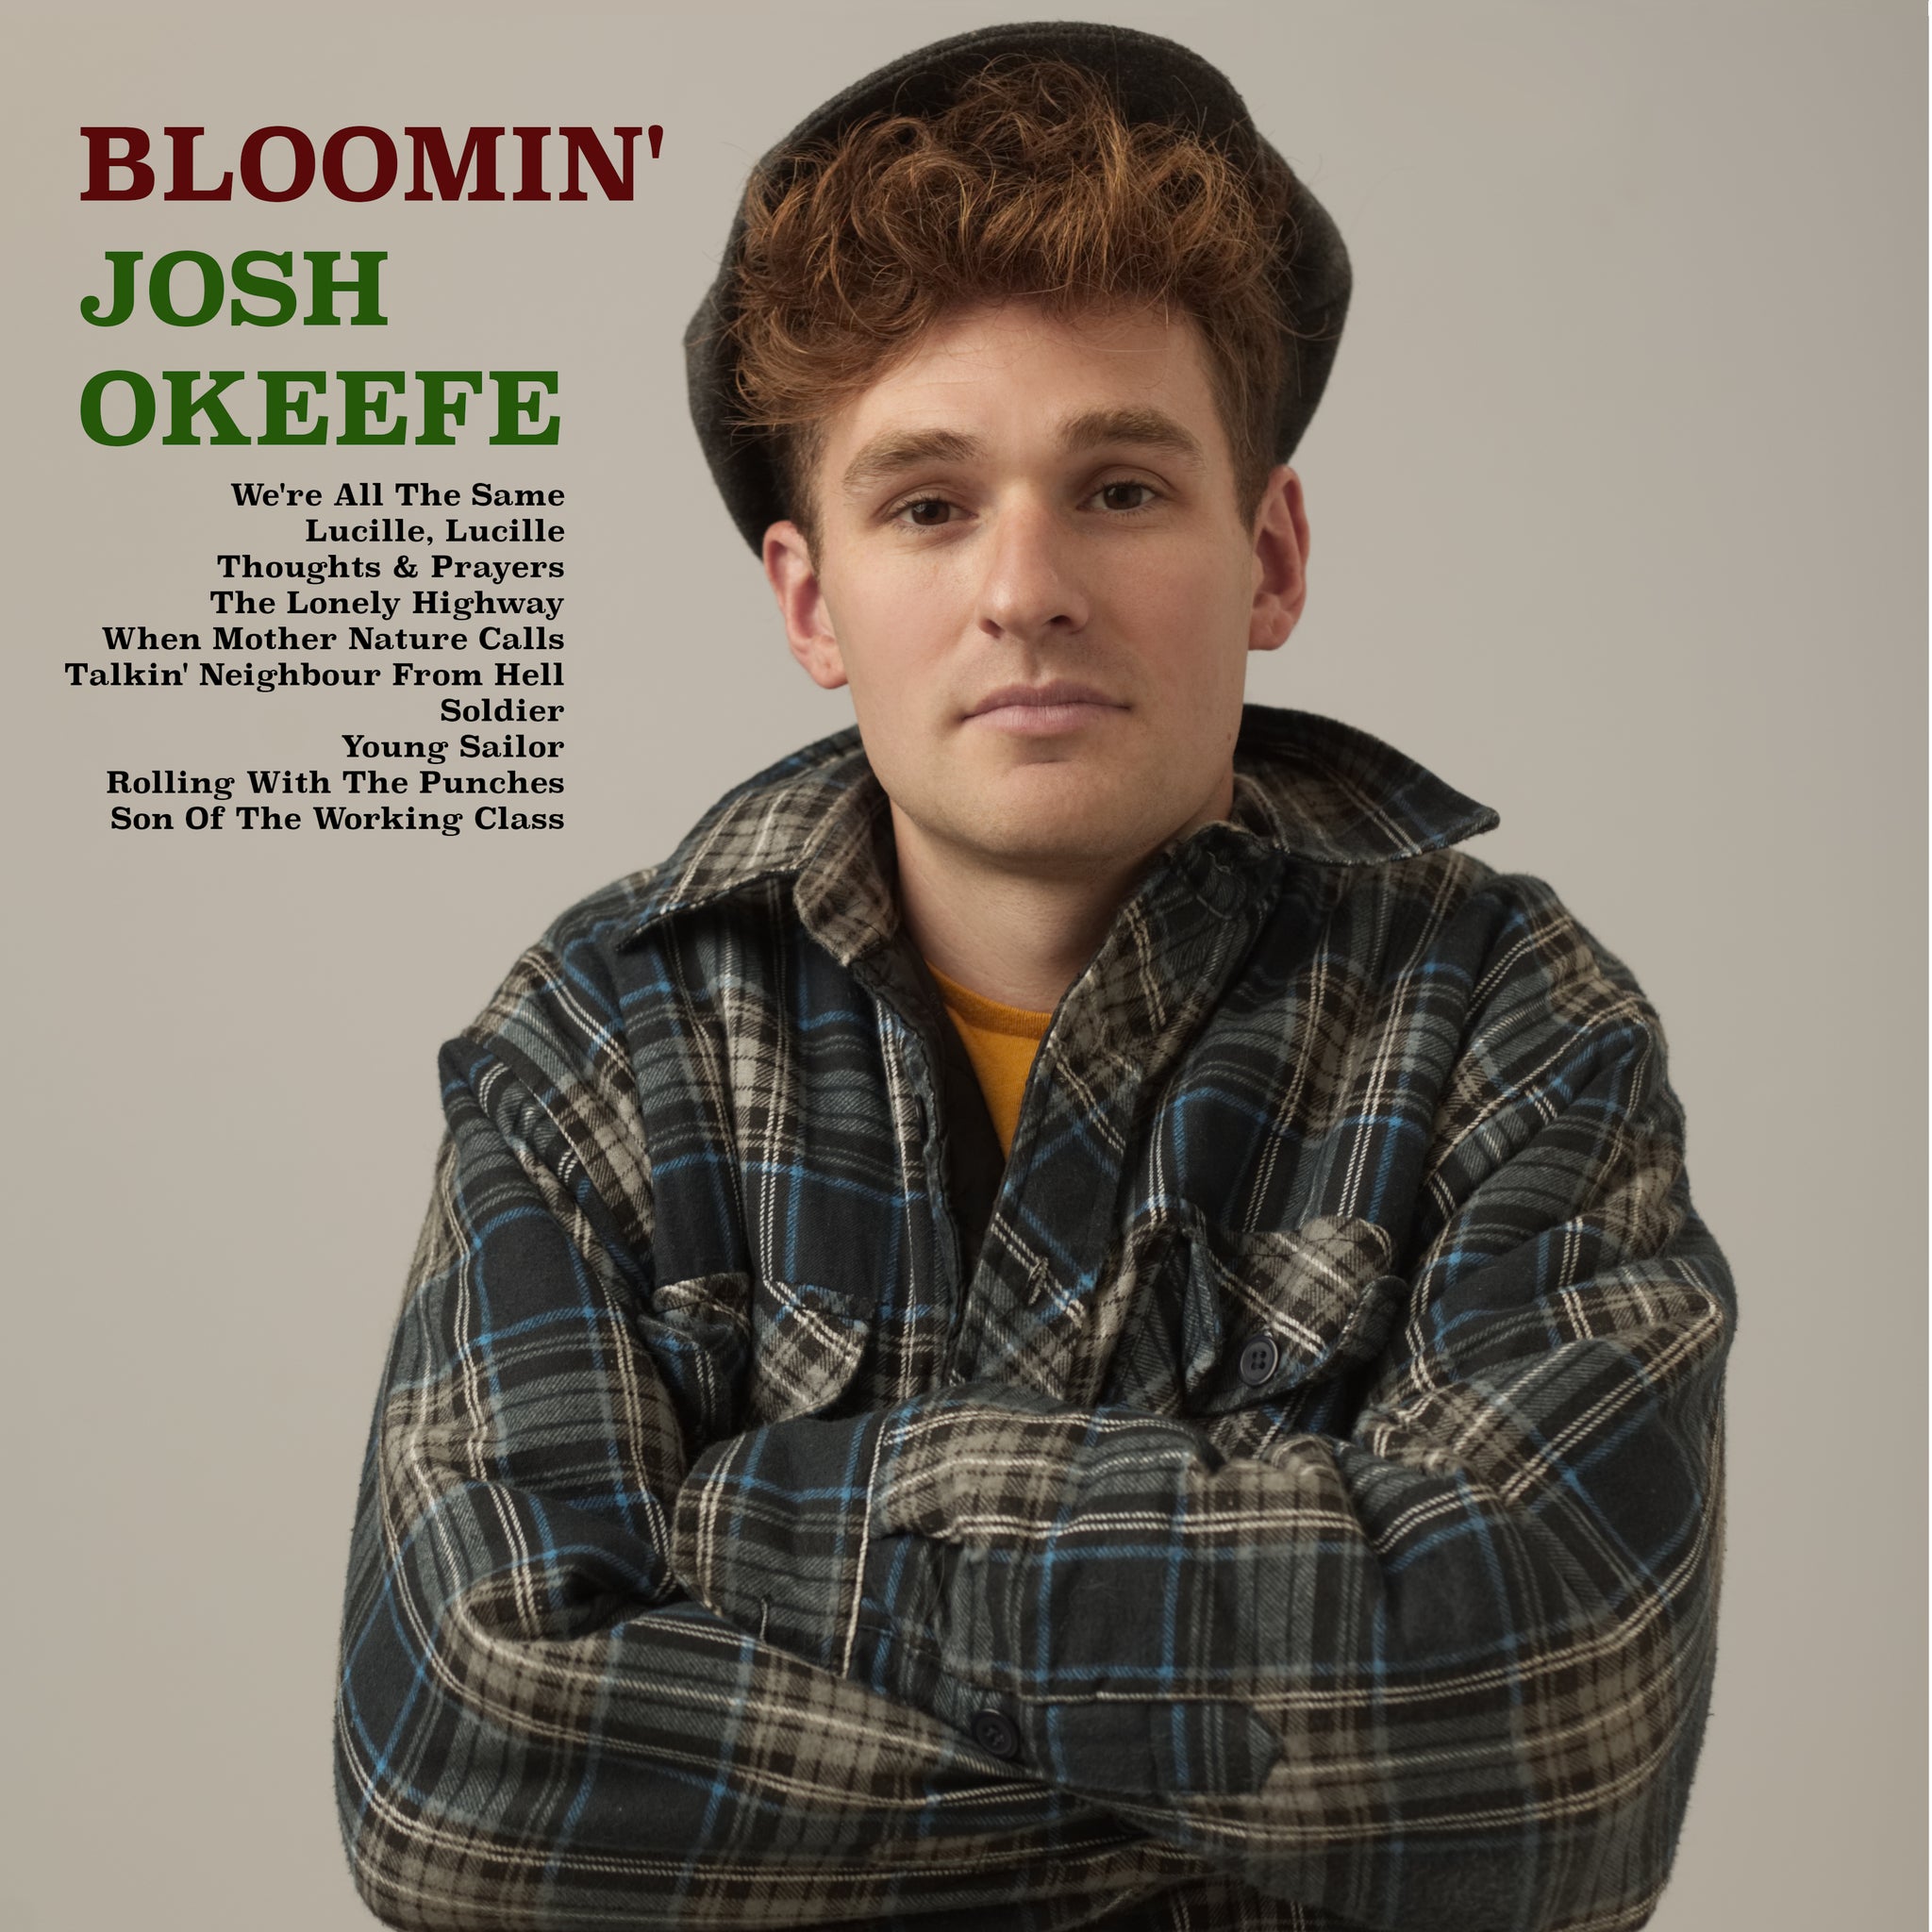 ALBUM: Josh Okeefe - Bloomin' Josh Okeefe (Vinyl LP)